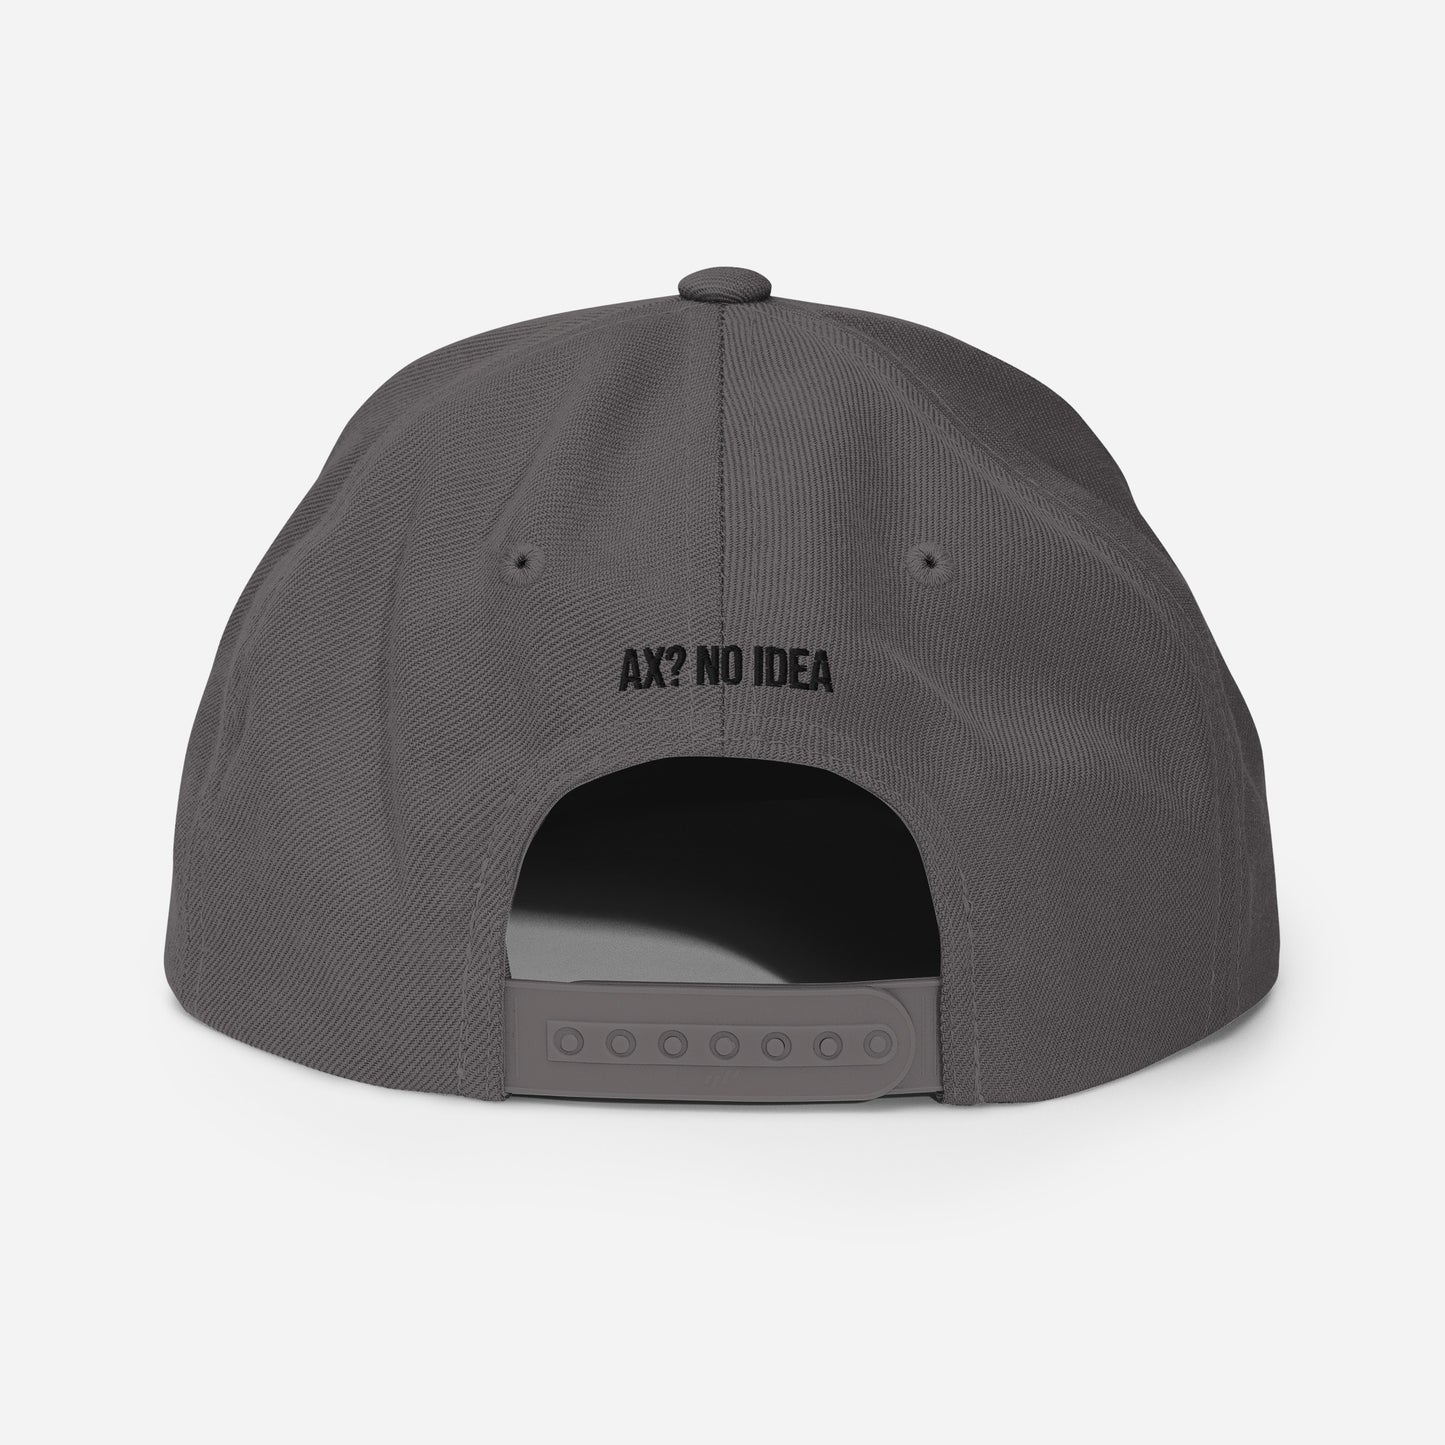 Ax? No Idea - Snapback Hat